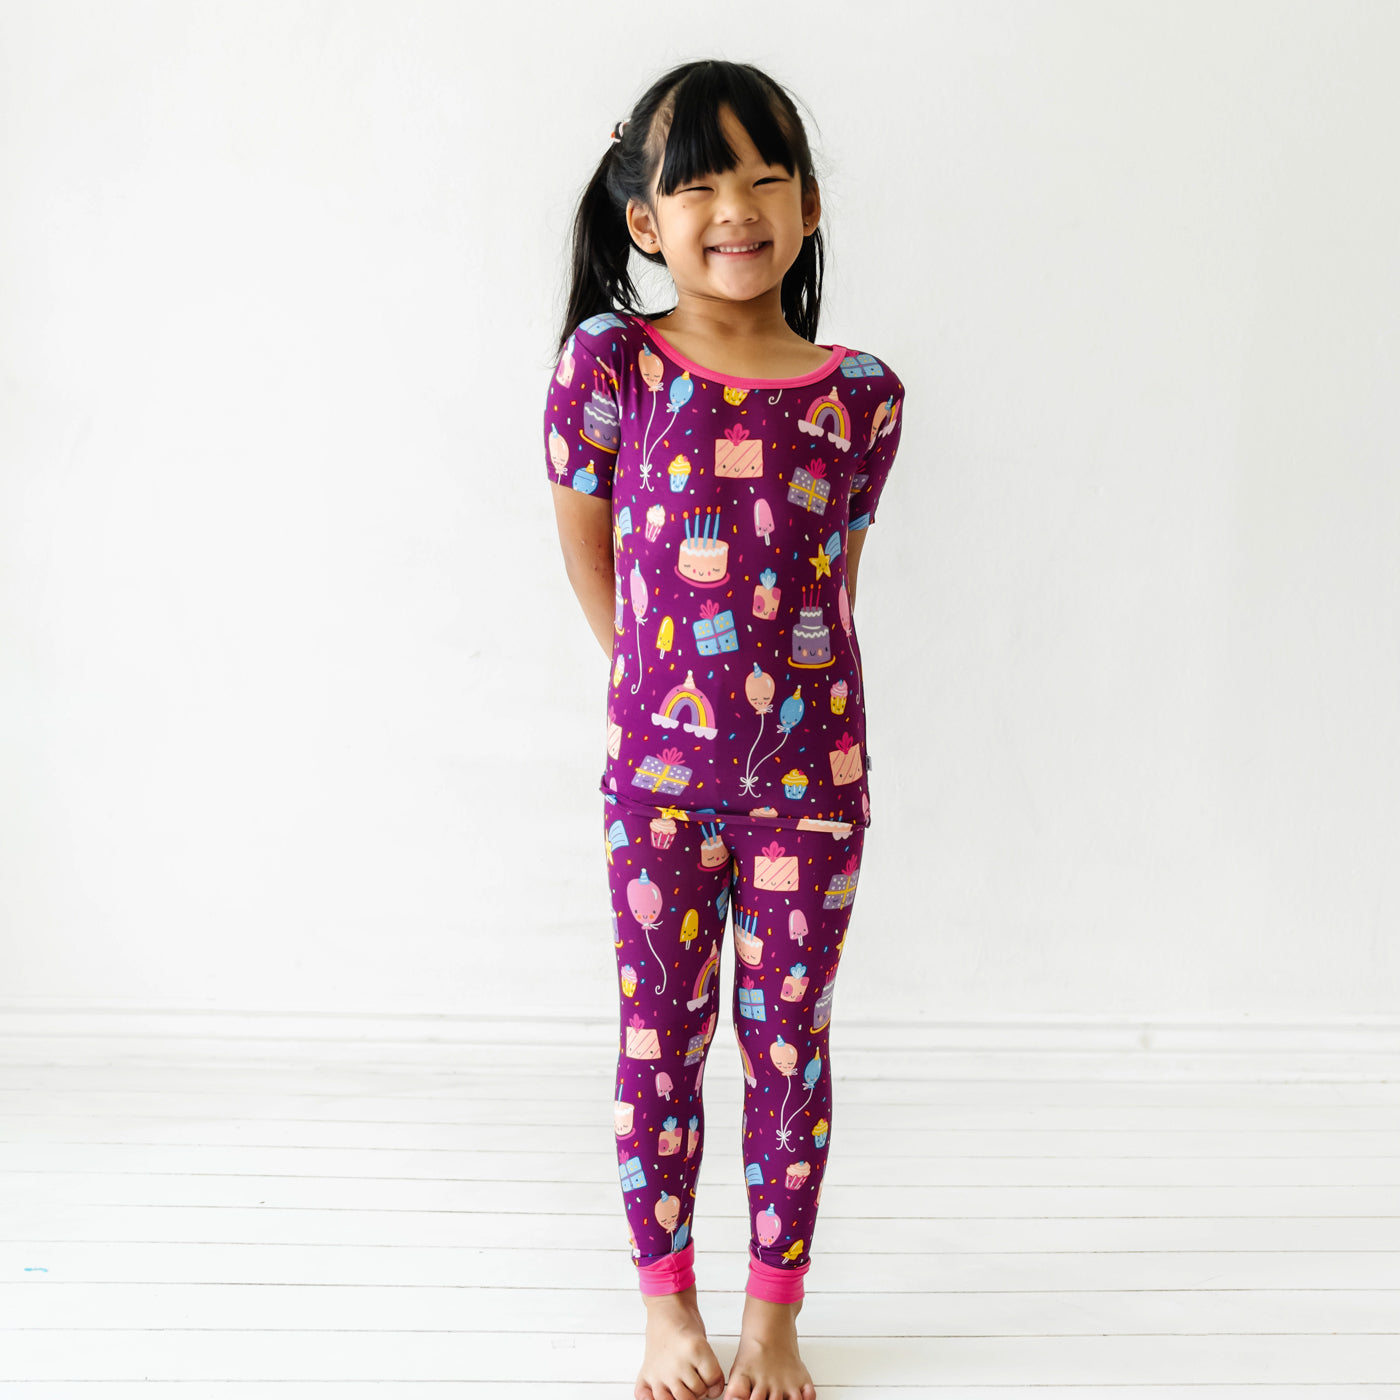 Elowel Girls Happy Birthday 2 Piece Pajama Set 100% Cotton Size 12